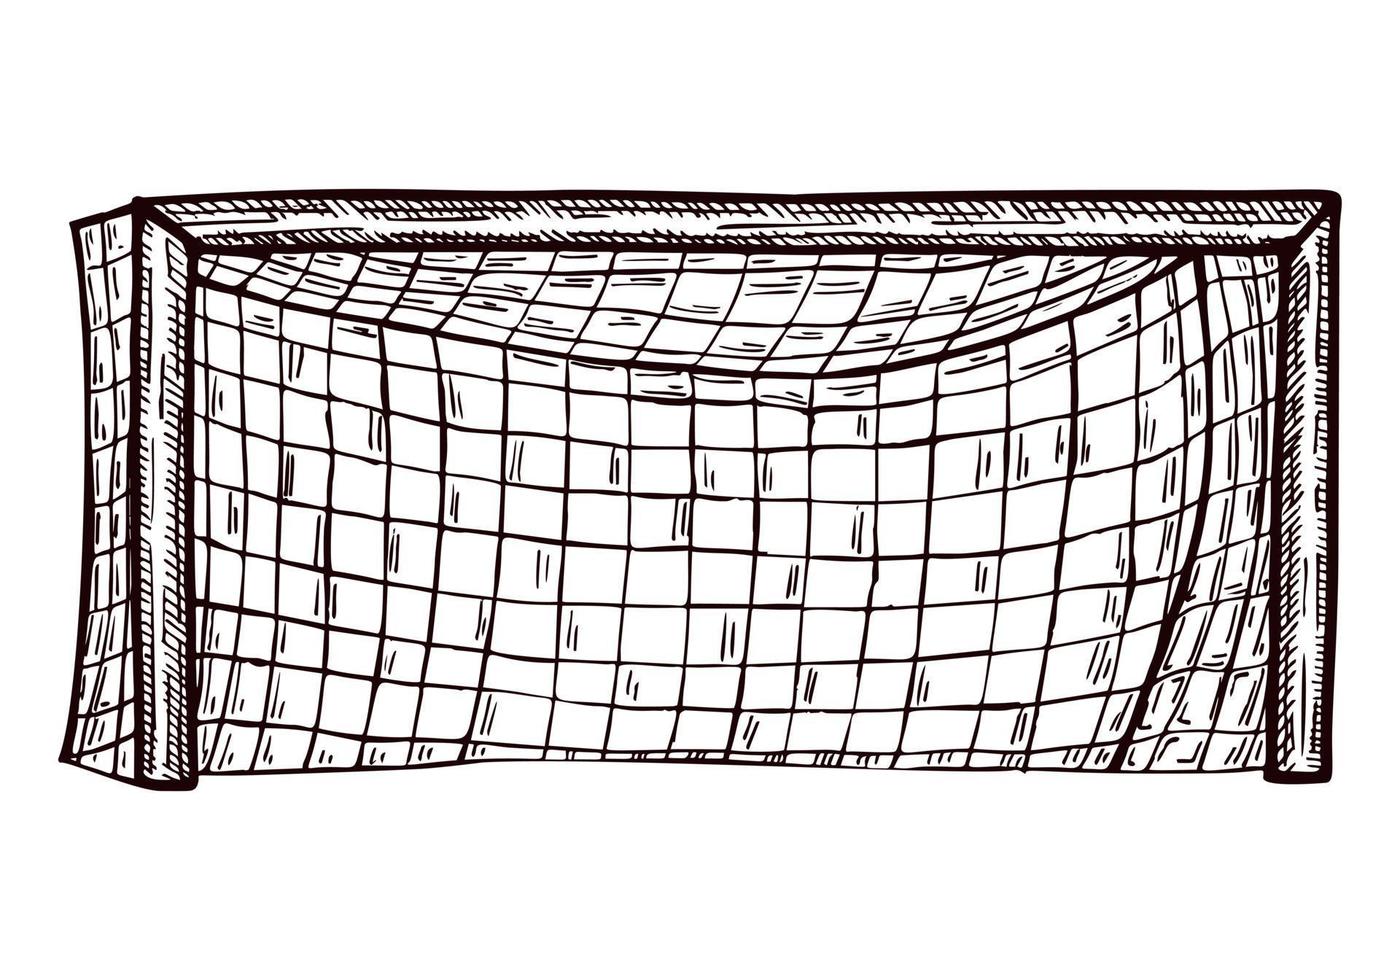 Fußballtor isoliert skizziert. vintage sportelemente für handgezeichneten stil der torwartinterferenz. vektor